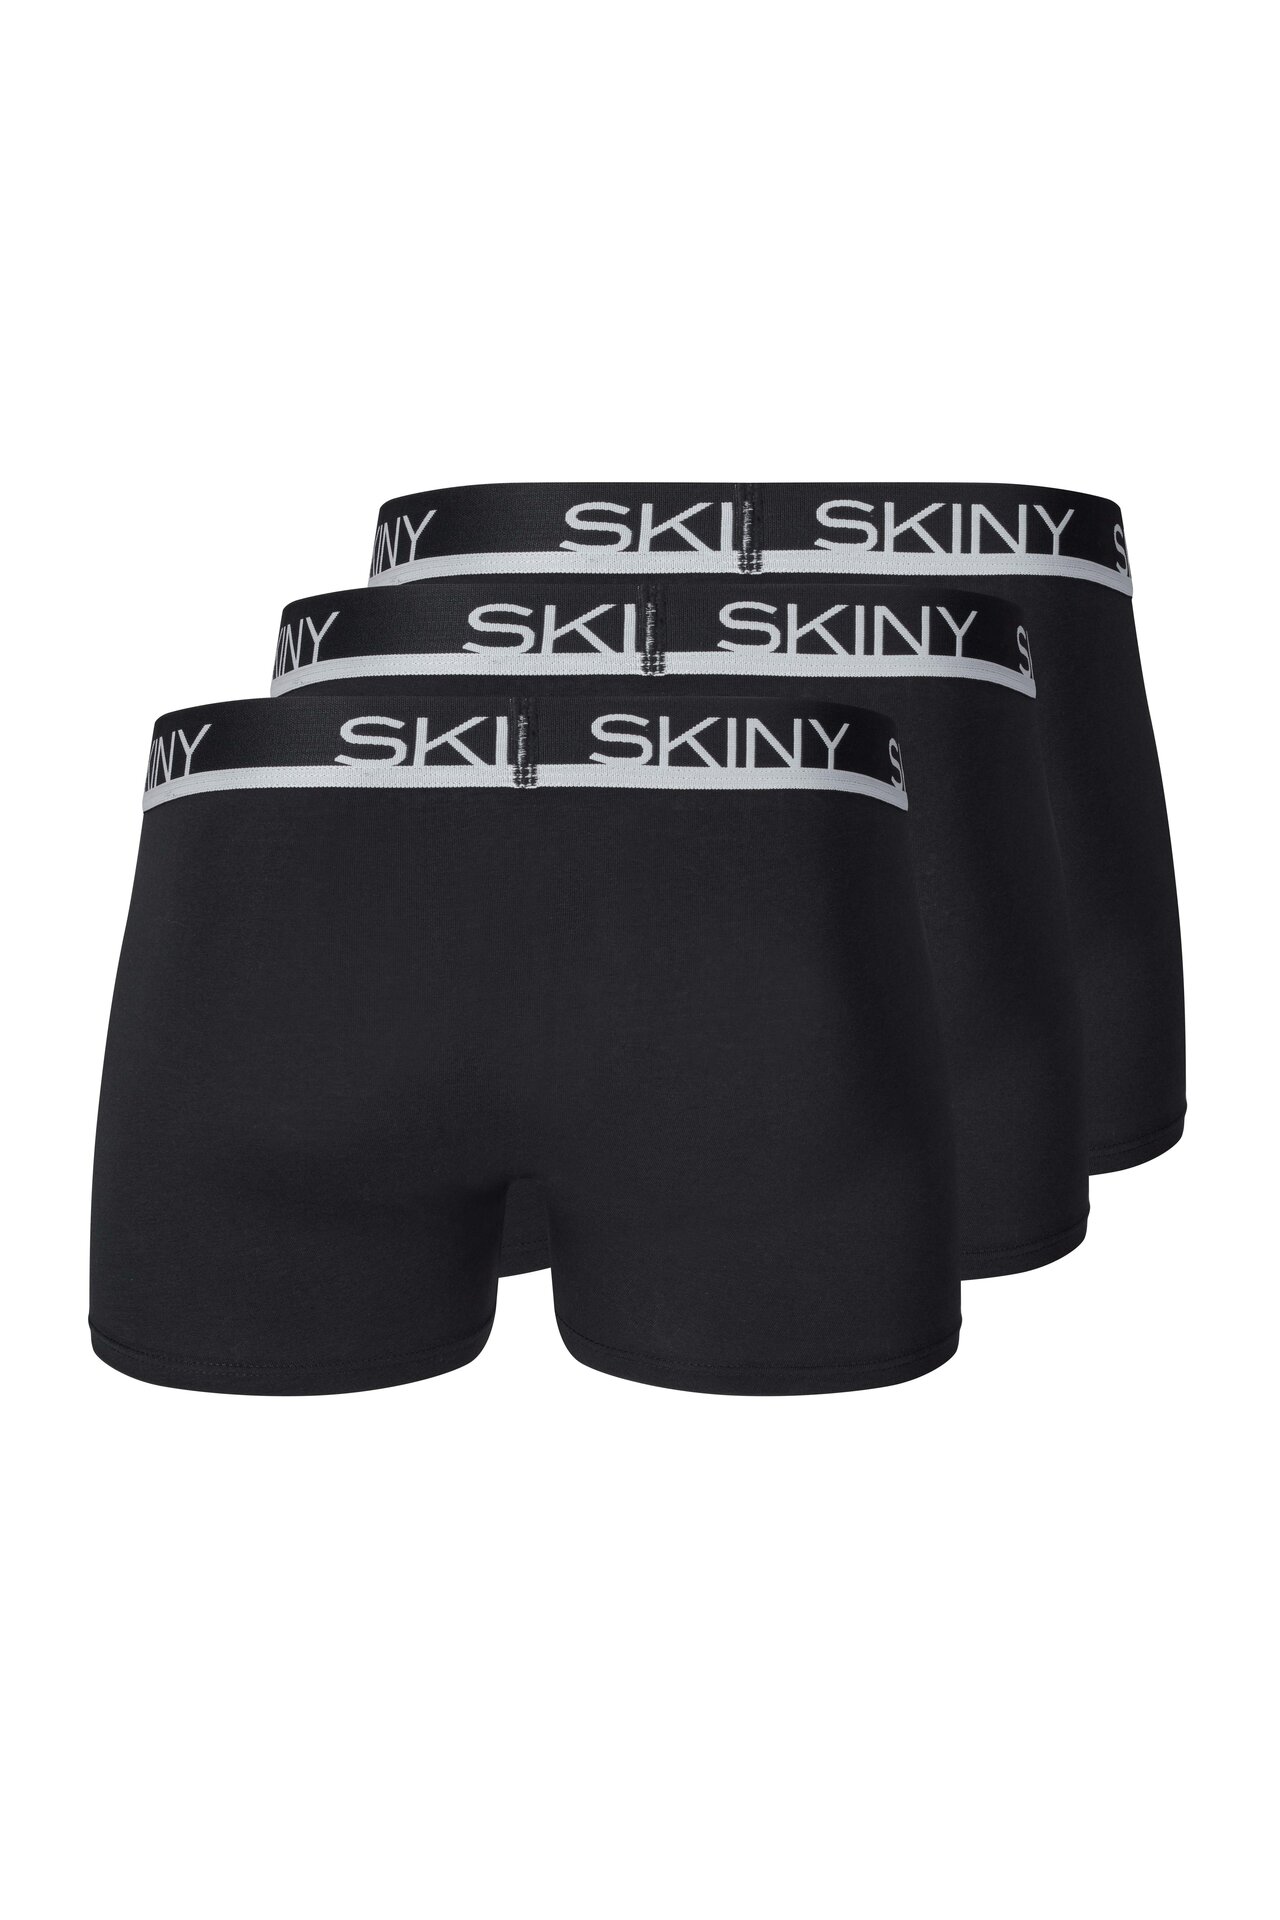 3er Pack Skiny Men Daywear Cotton Multipack Herren Pant